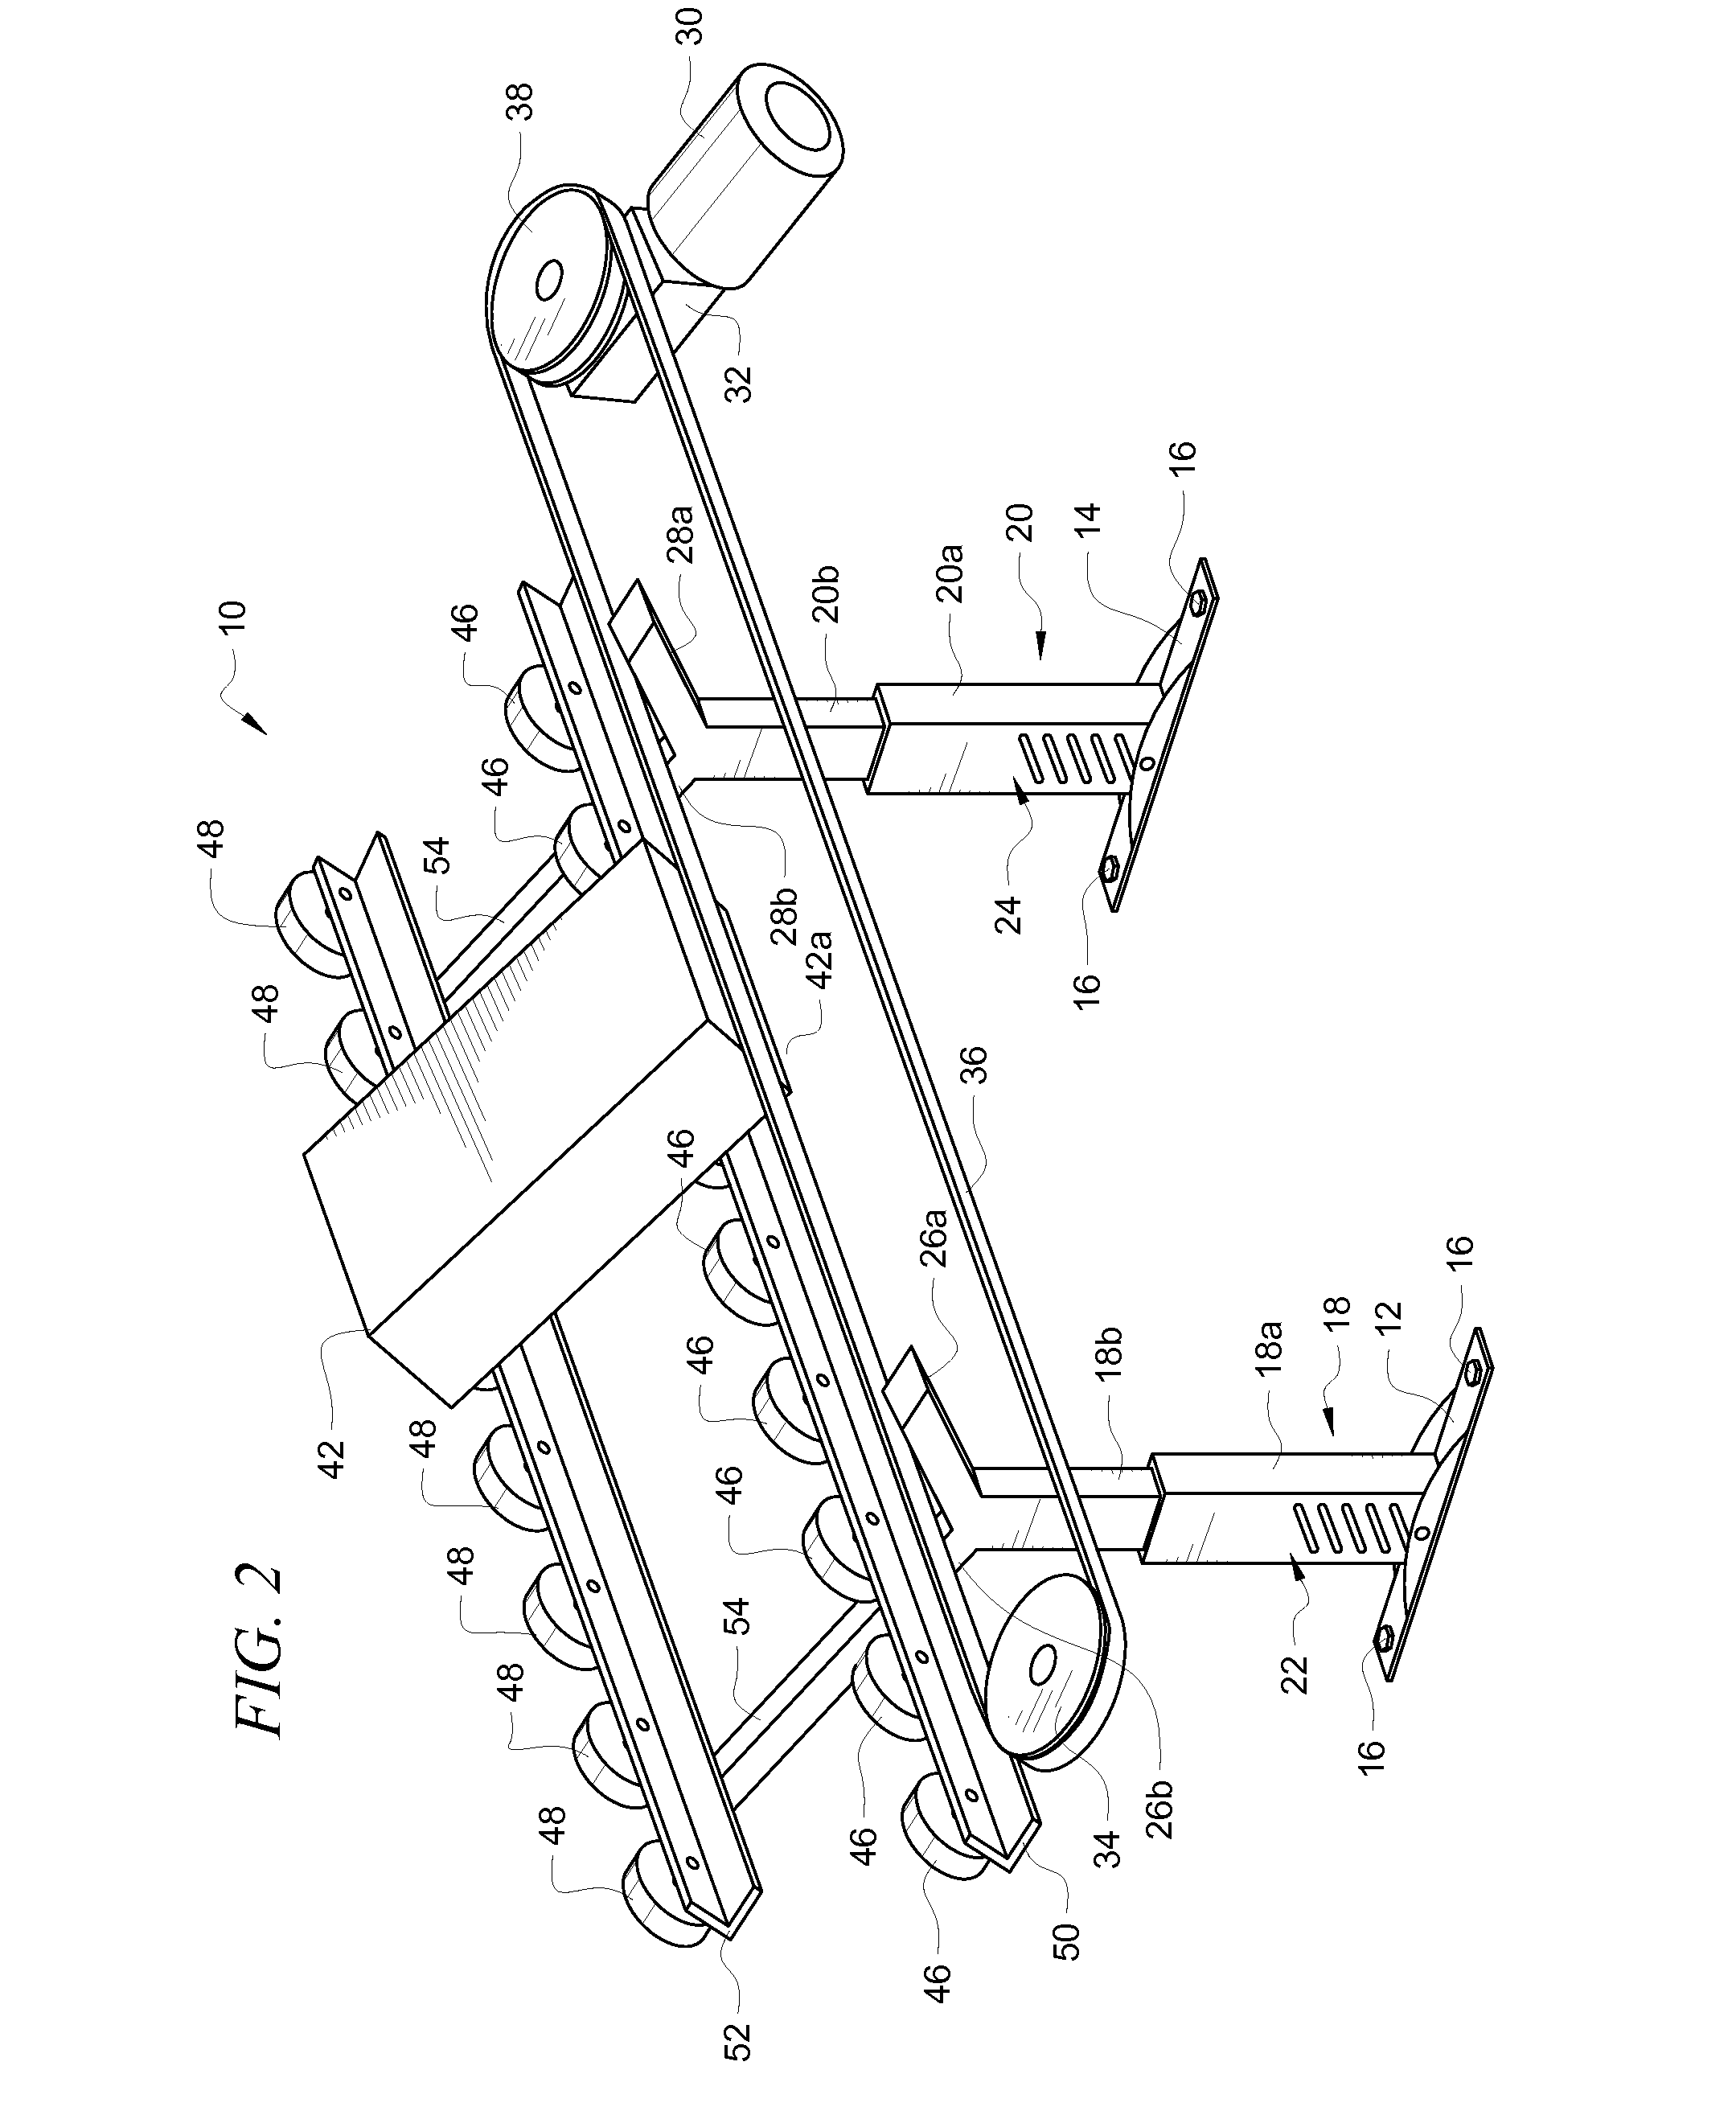 V-Shaped Product Conveyor